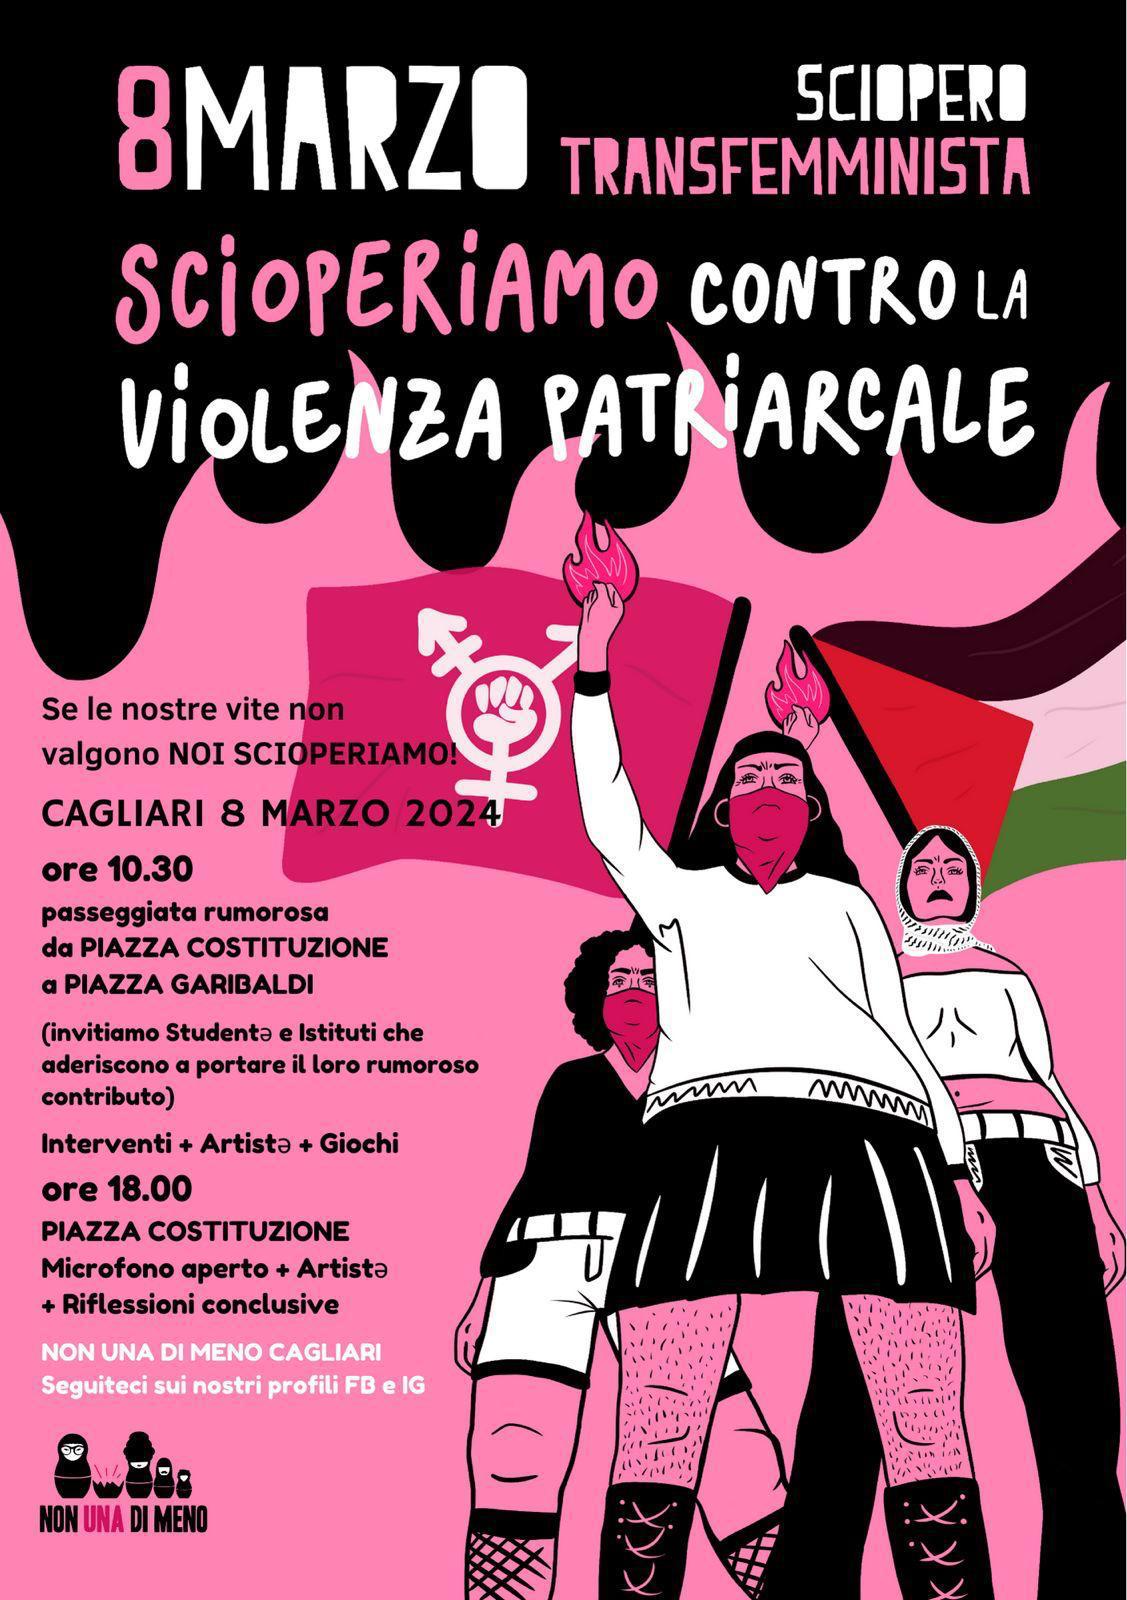 8 marzo Sciopero Transfemminista